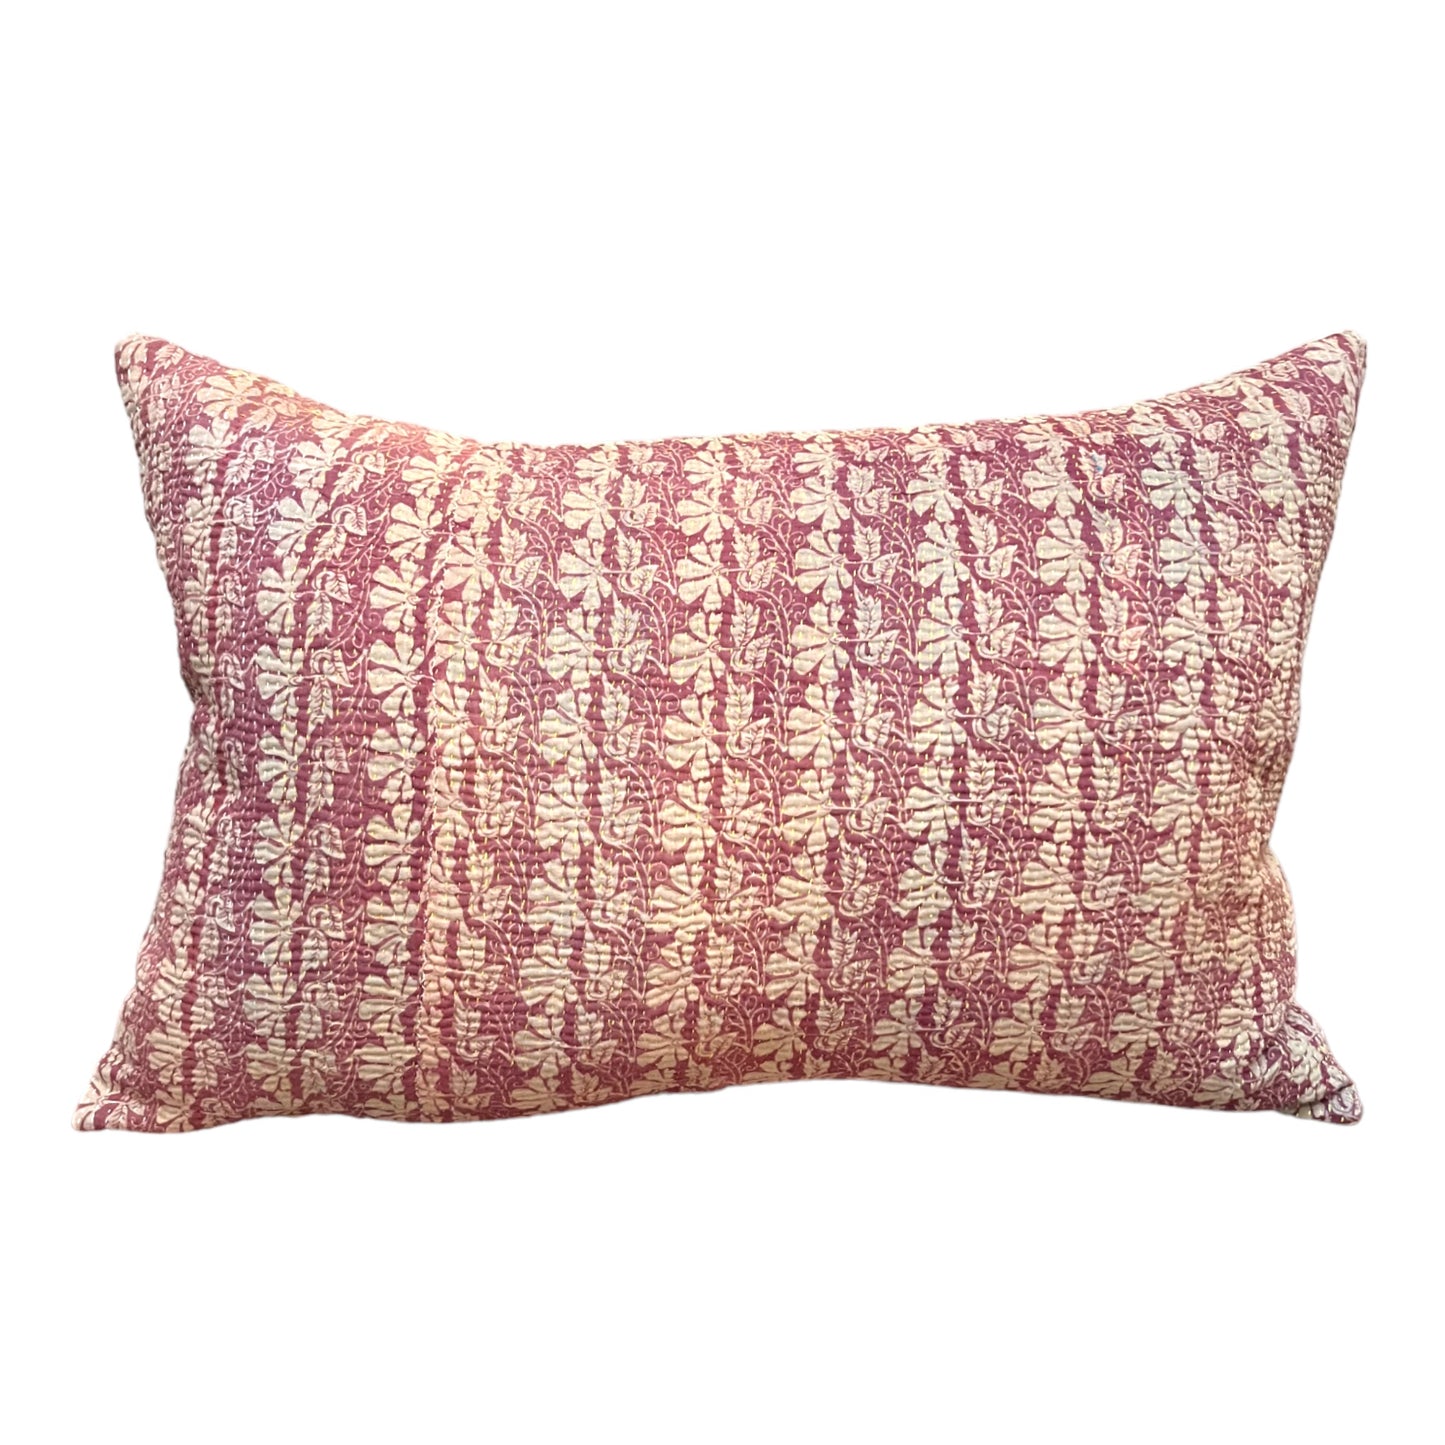 Pink cream kantha cushion rectangle